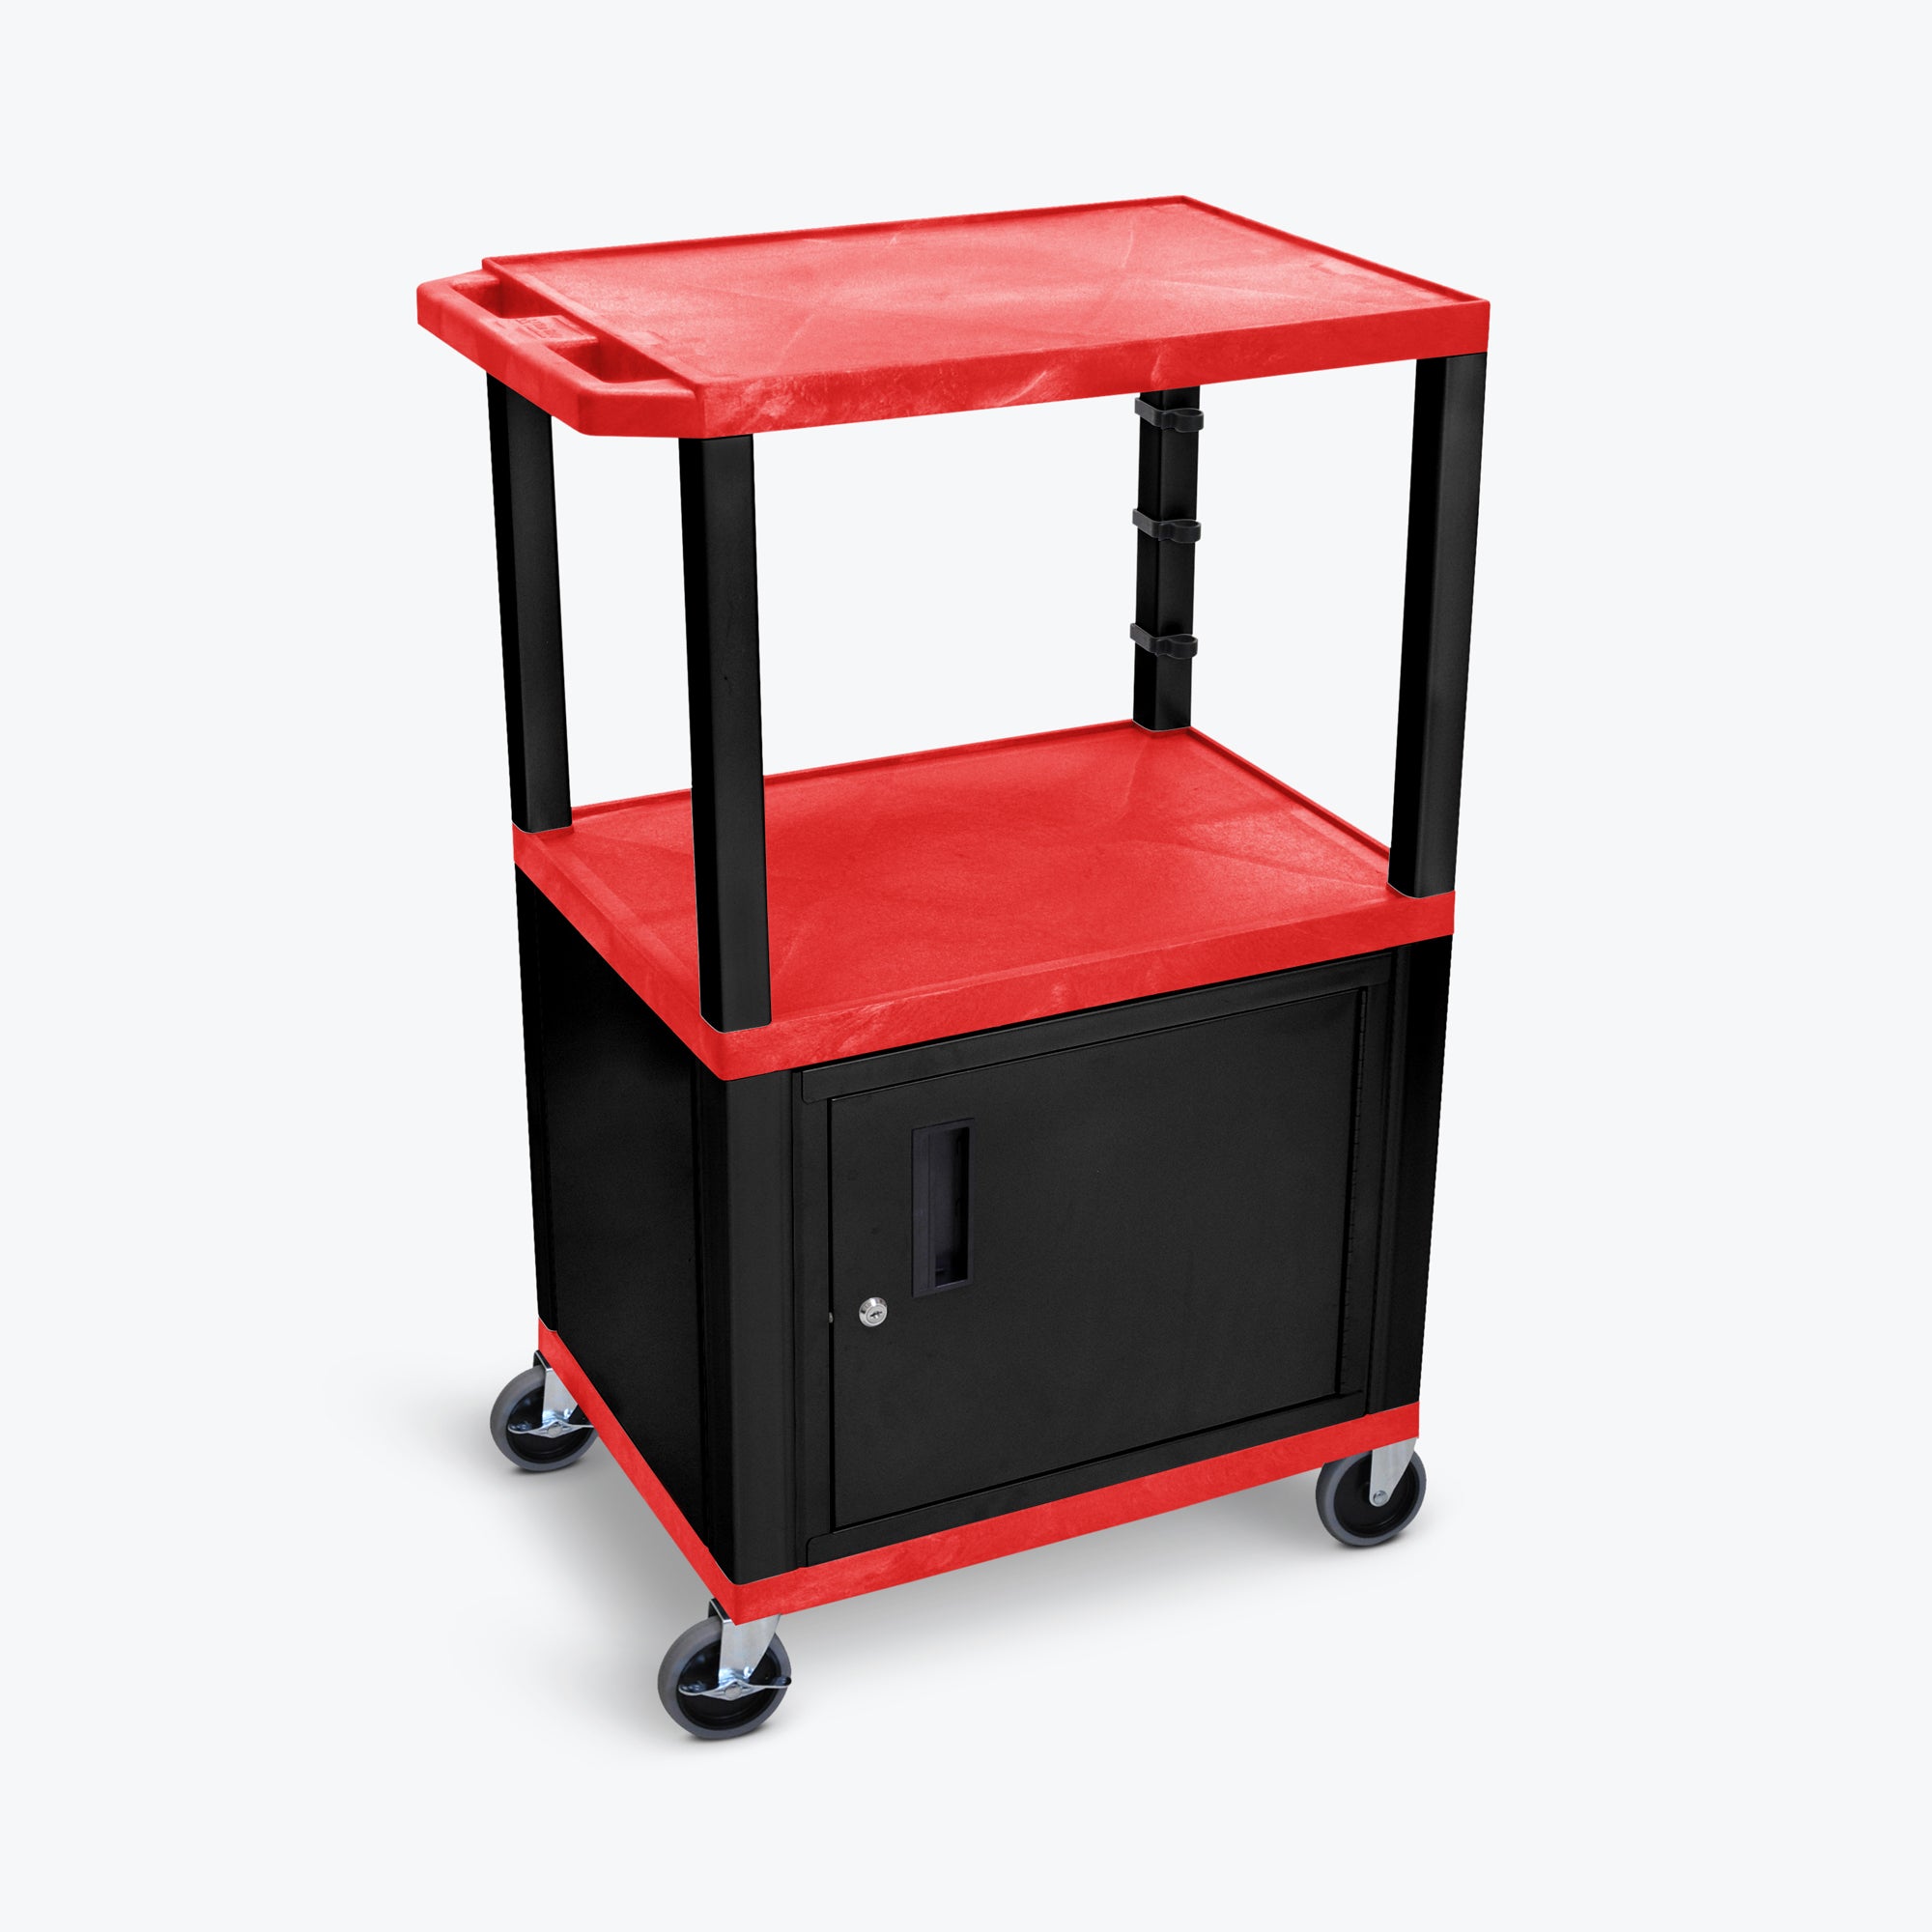 Luxor 42" 3-Shelf Tuffy AV Cart with Electric Assembly, Black Cabinet & Legs (Red Shelves) - WT42RC2E-B